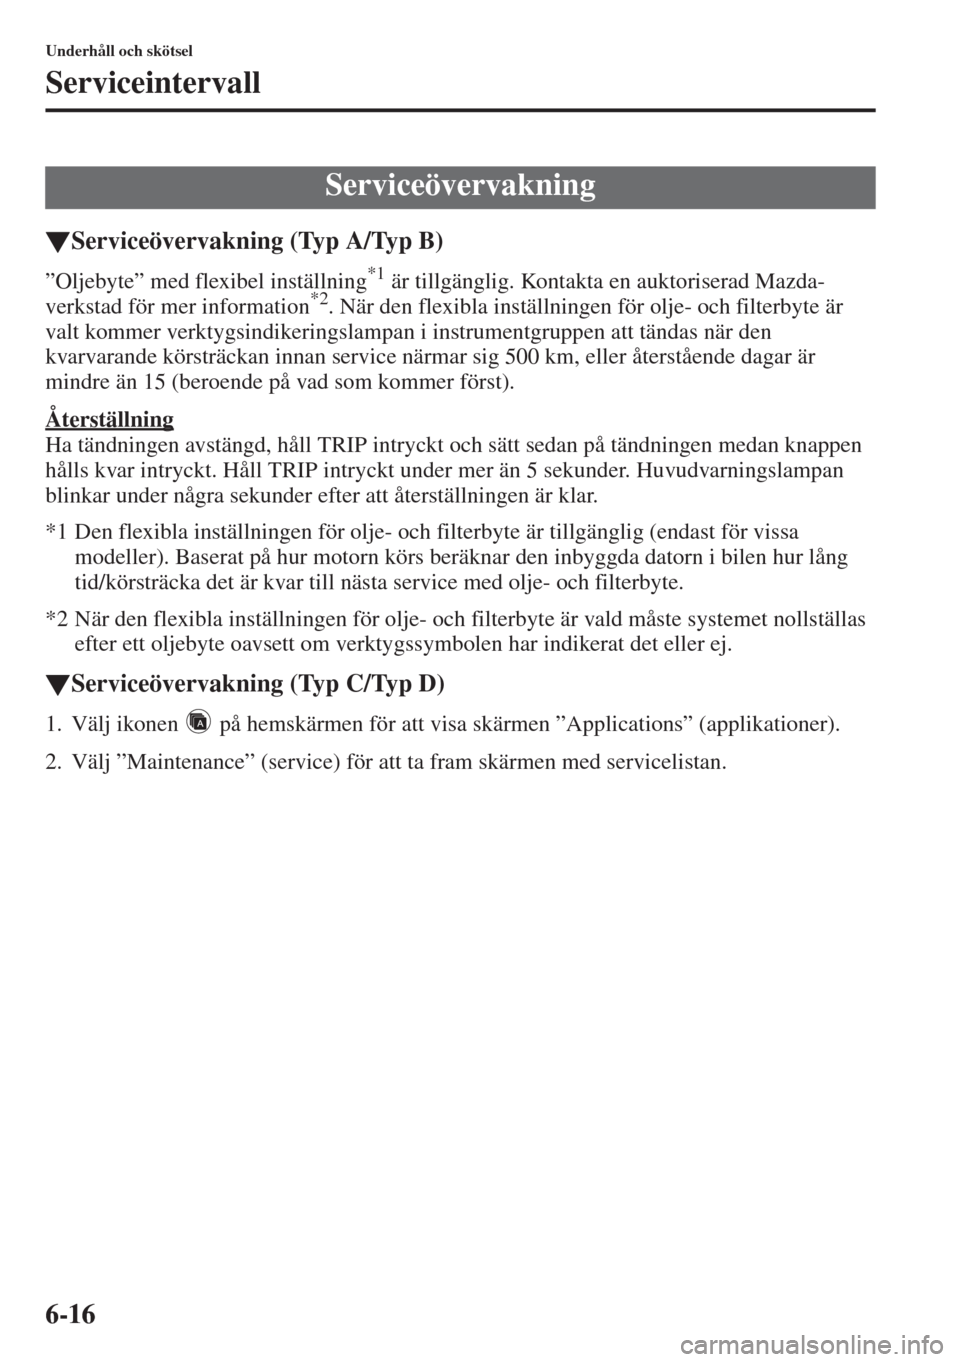 MAZDA MODEL 6 2015  Ägarmanual (in Swedish) 6-16
Underhåll och skötsel
Serviceintervall
�WServiceövervakning (Typ A/Typ B)
”Oljebyte” med flexibel inställning*1 är tillgänglig. Kontakta en auktoriserad Mazda-
verkstad för mer informa